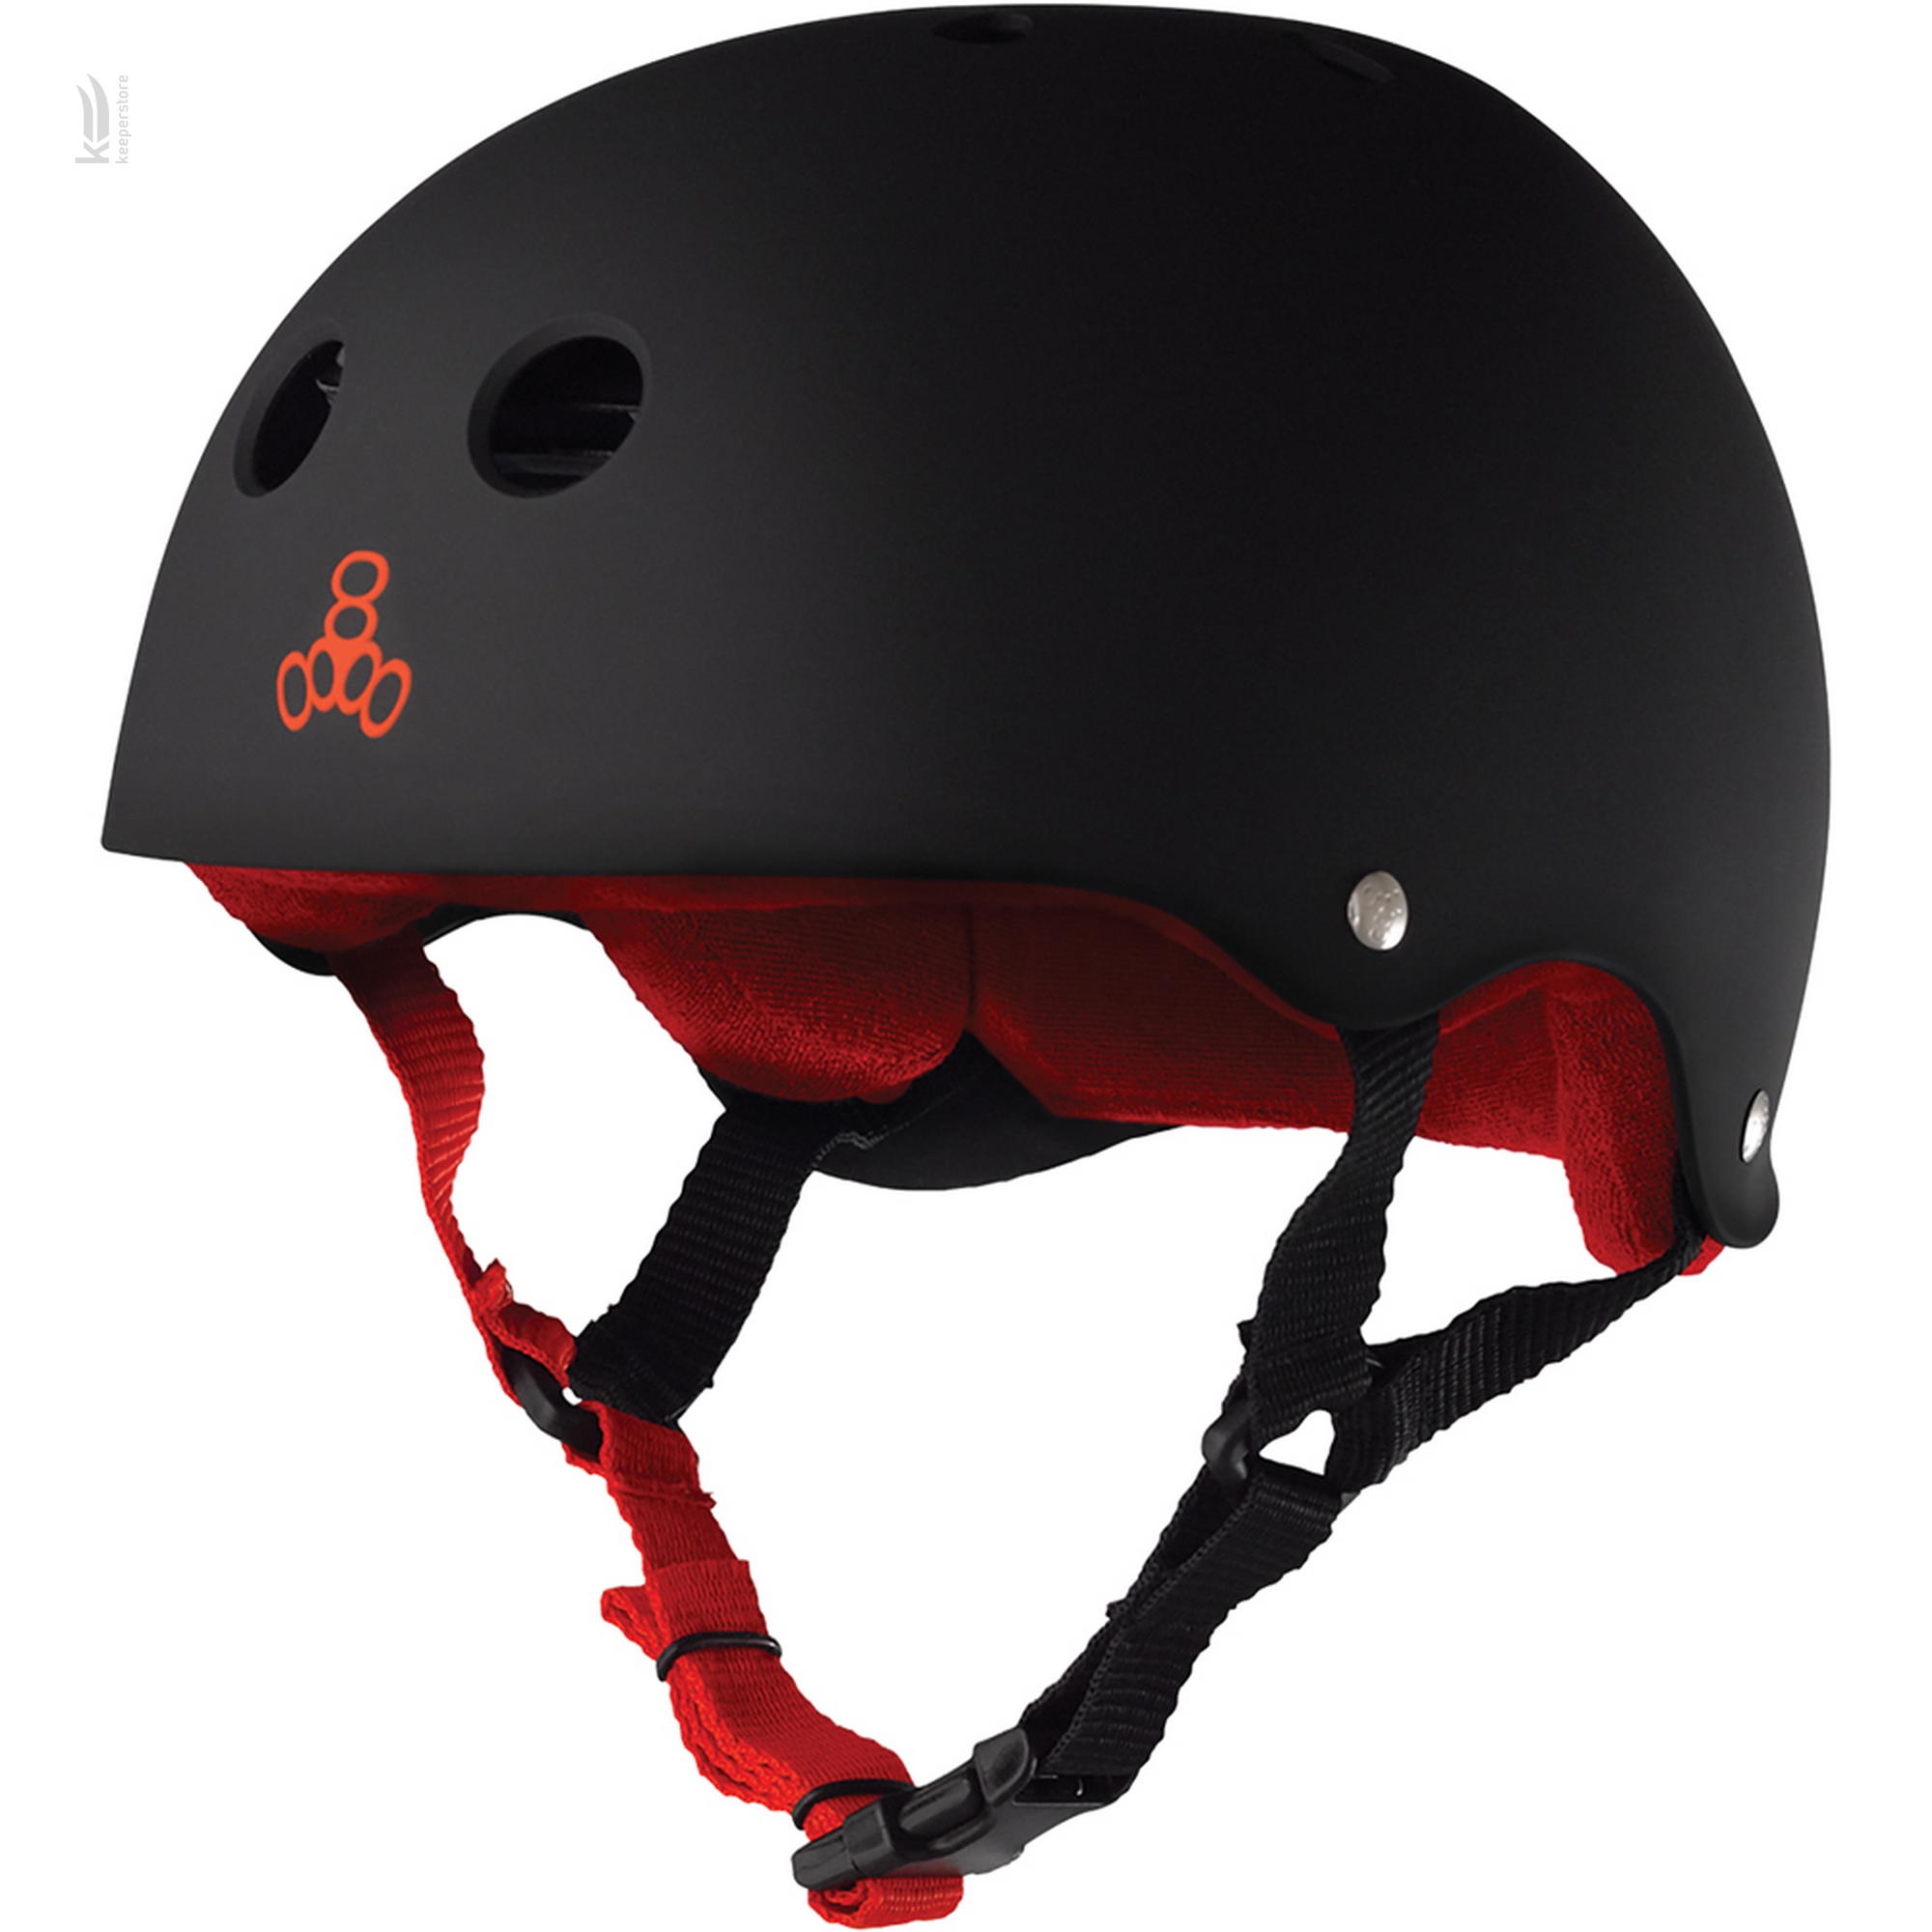 Защитный шлем казанок Triple8 Sweatsaver Helmet Black w/ Red (S)